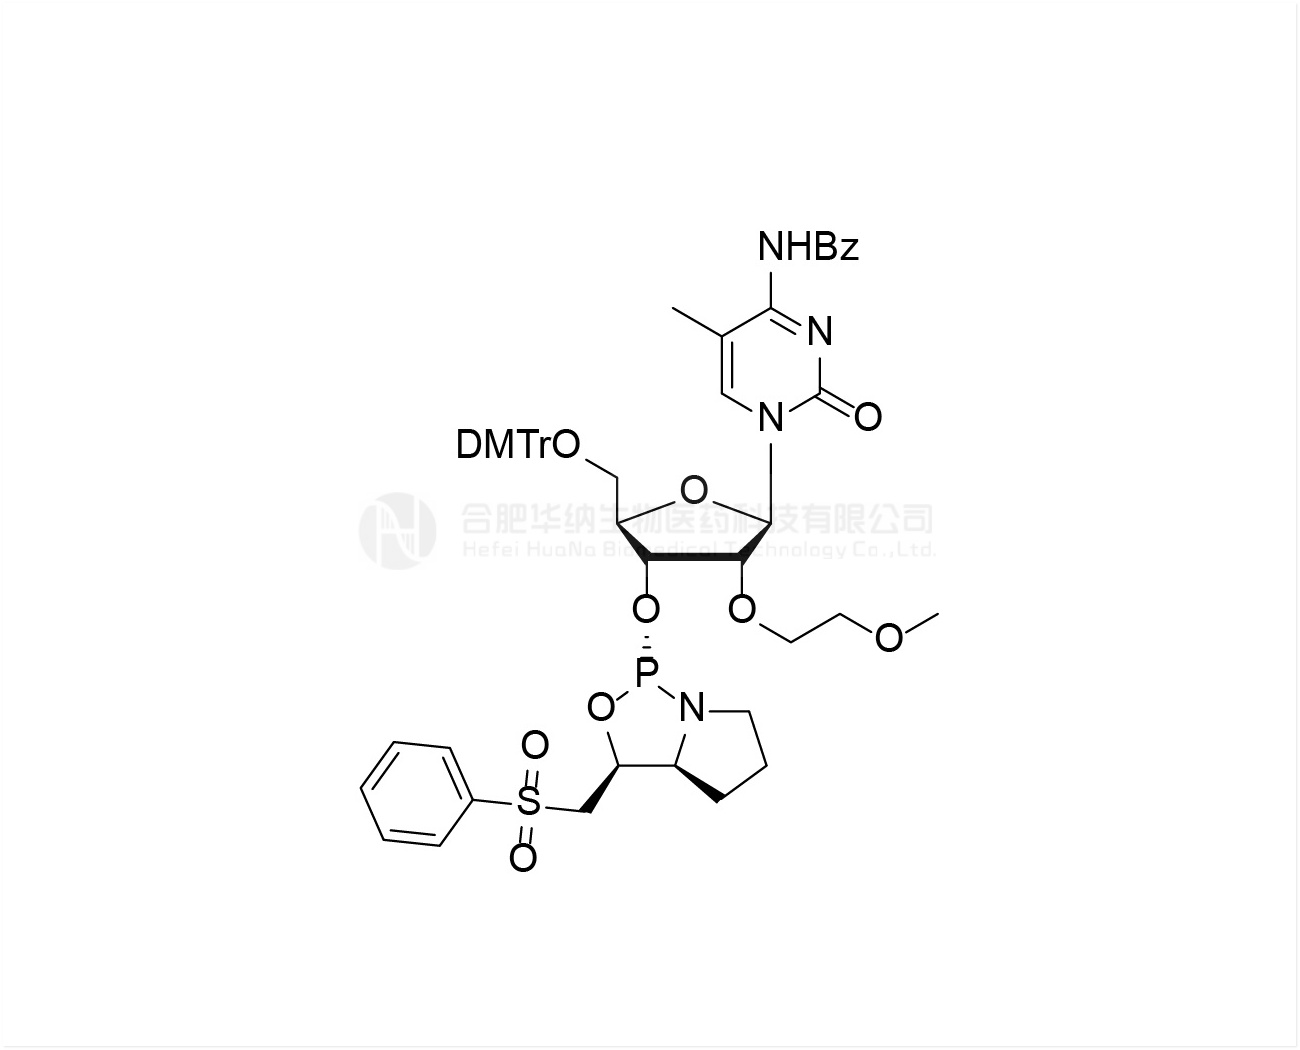 DMTr-2'-O-MOE-5-Me-rC(Bz)-3'-(L)-PSM-Phosphoramidite